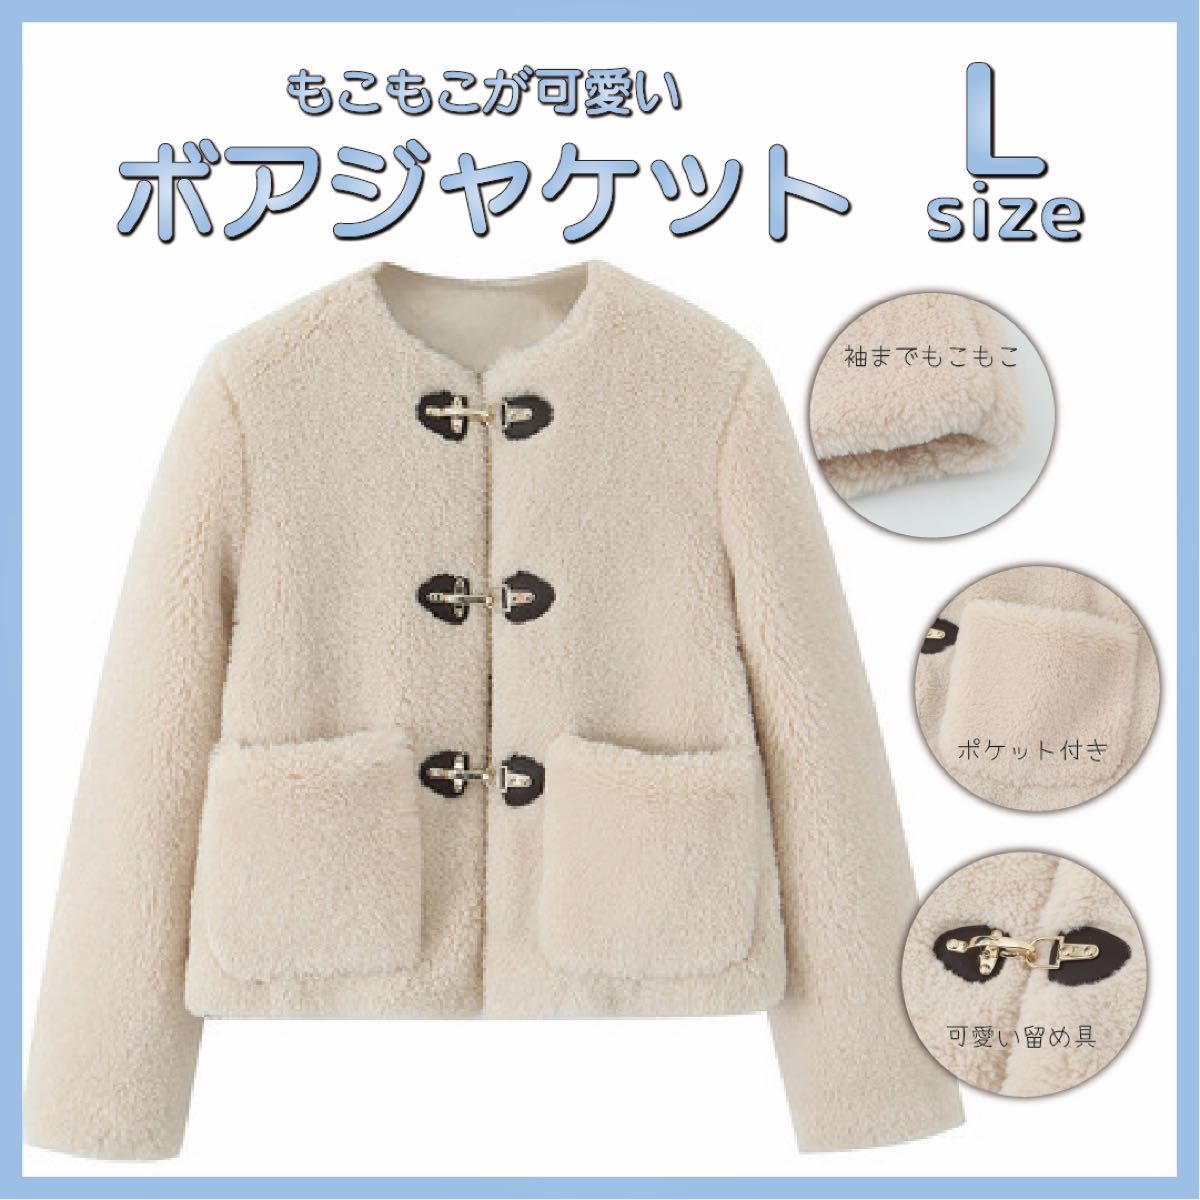 【☆大人気☆】【Lサイズ】ジャケット 暖かい オシャレ 可愛い Lサイズ